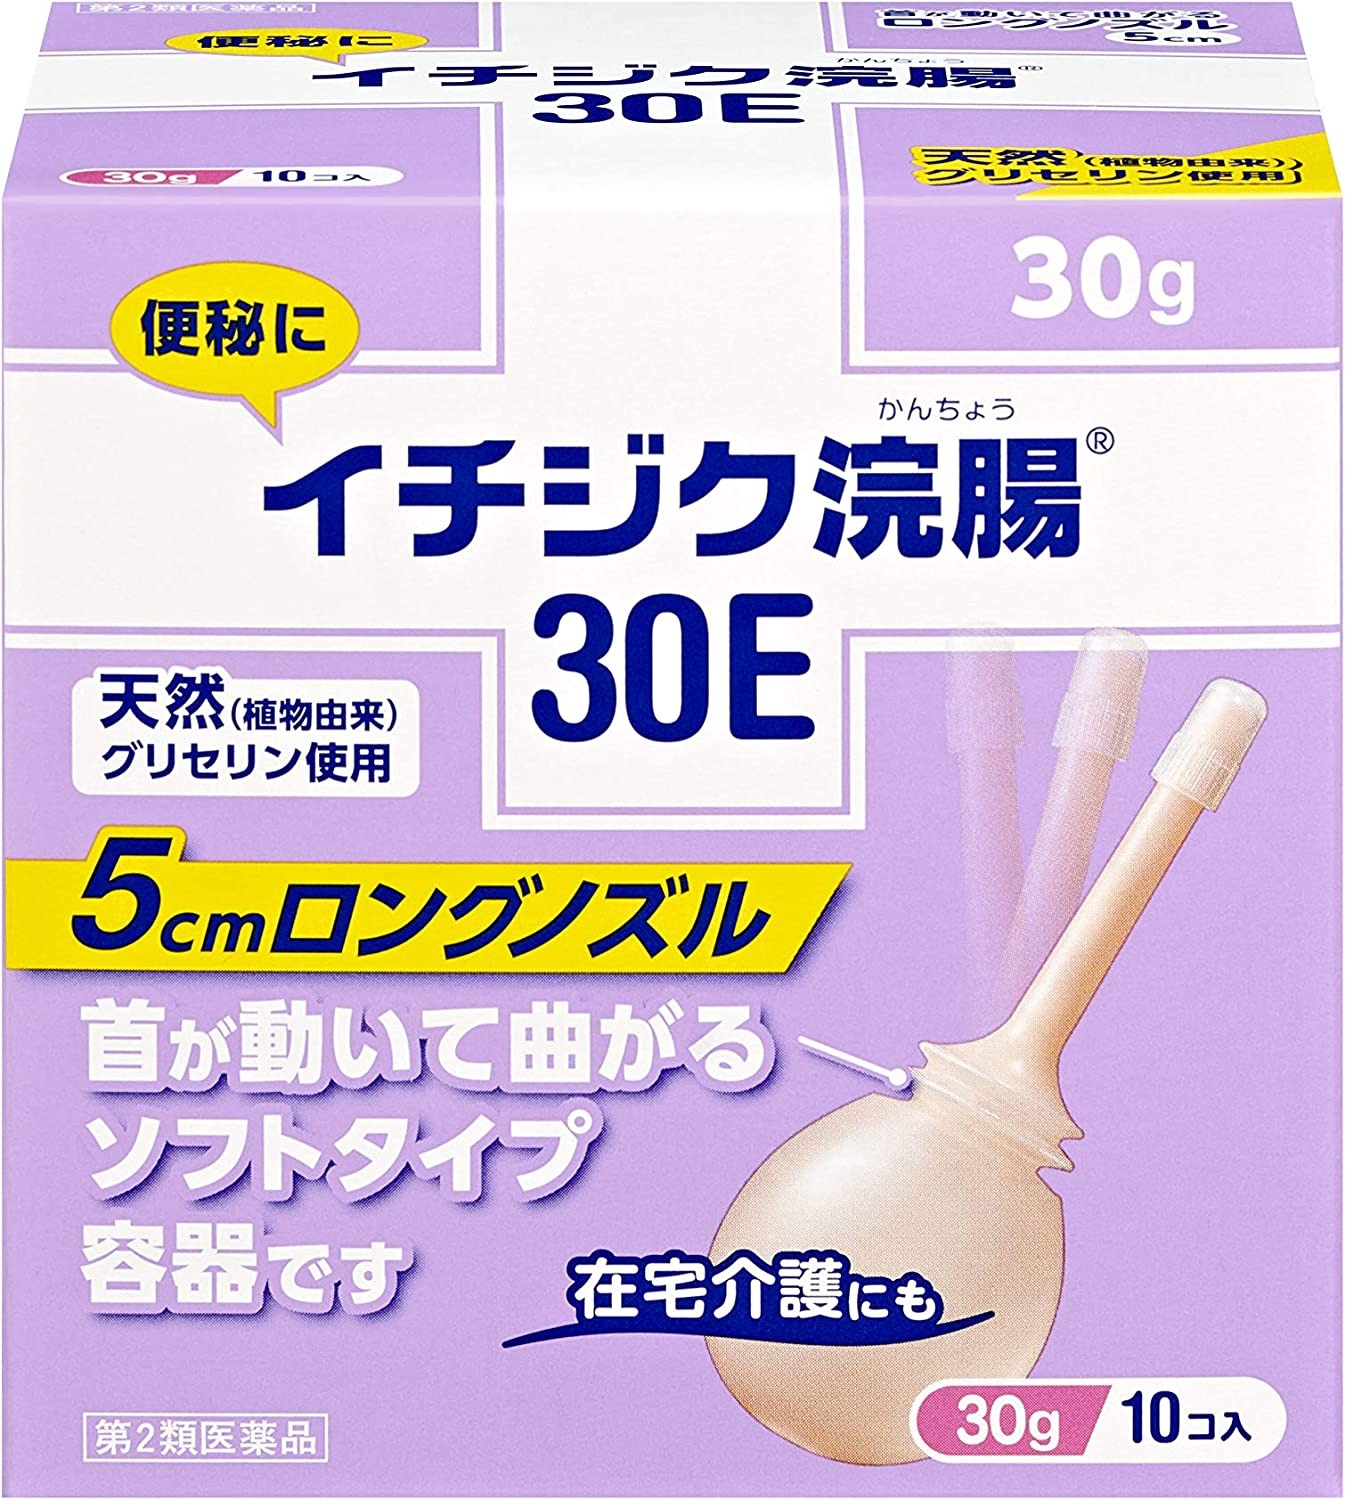 【第2類医薬品】イチジク浣腸 30E (30g×10個入)×1個 4987015023018